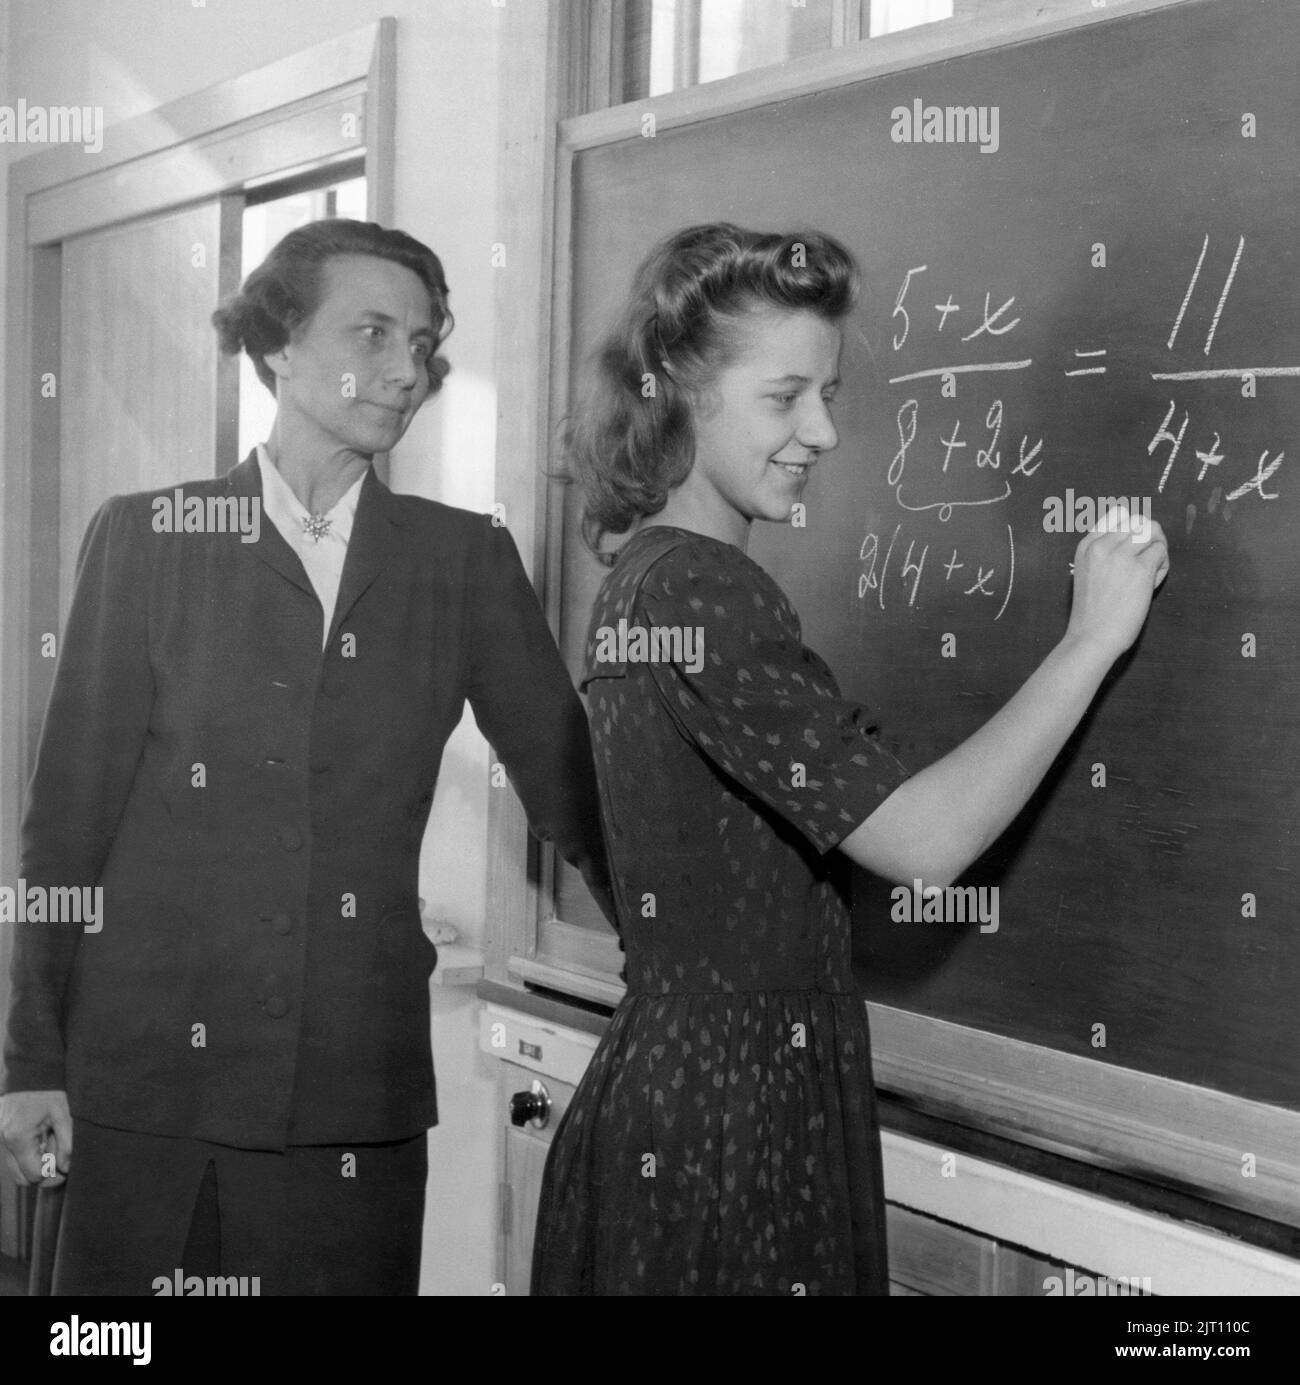 Schule in der 1940s. Ein Lehrer vor dem Klassenzimmer an der schwarzen Tafel mit einem der Schüler, der eine mathematische Berechnung löst. Die Lehrerin ist Frau Aina Erlanger, Frau des schwedischen Premierministers Tage Erlanger. Schweden 1946 Stockfoto